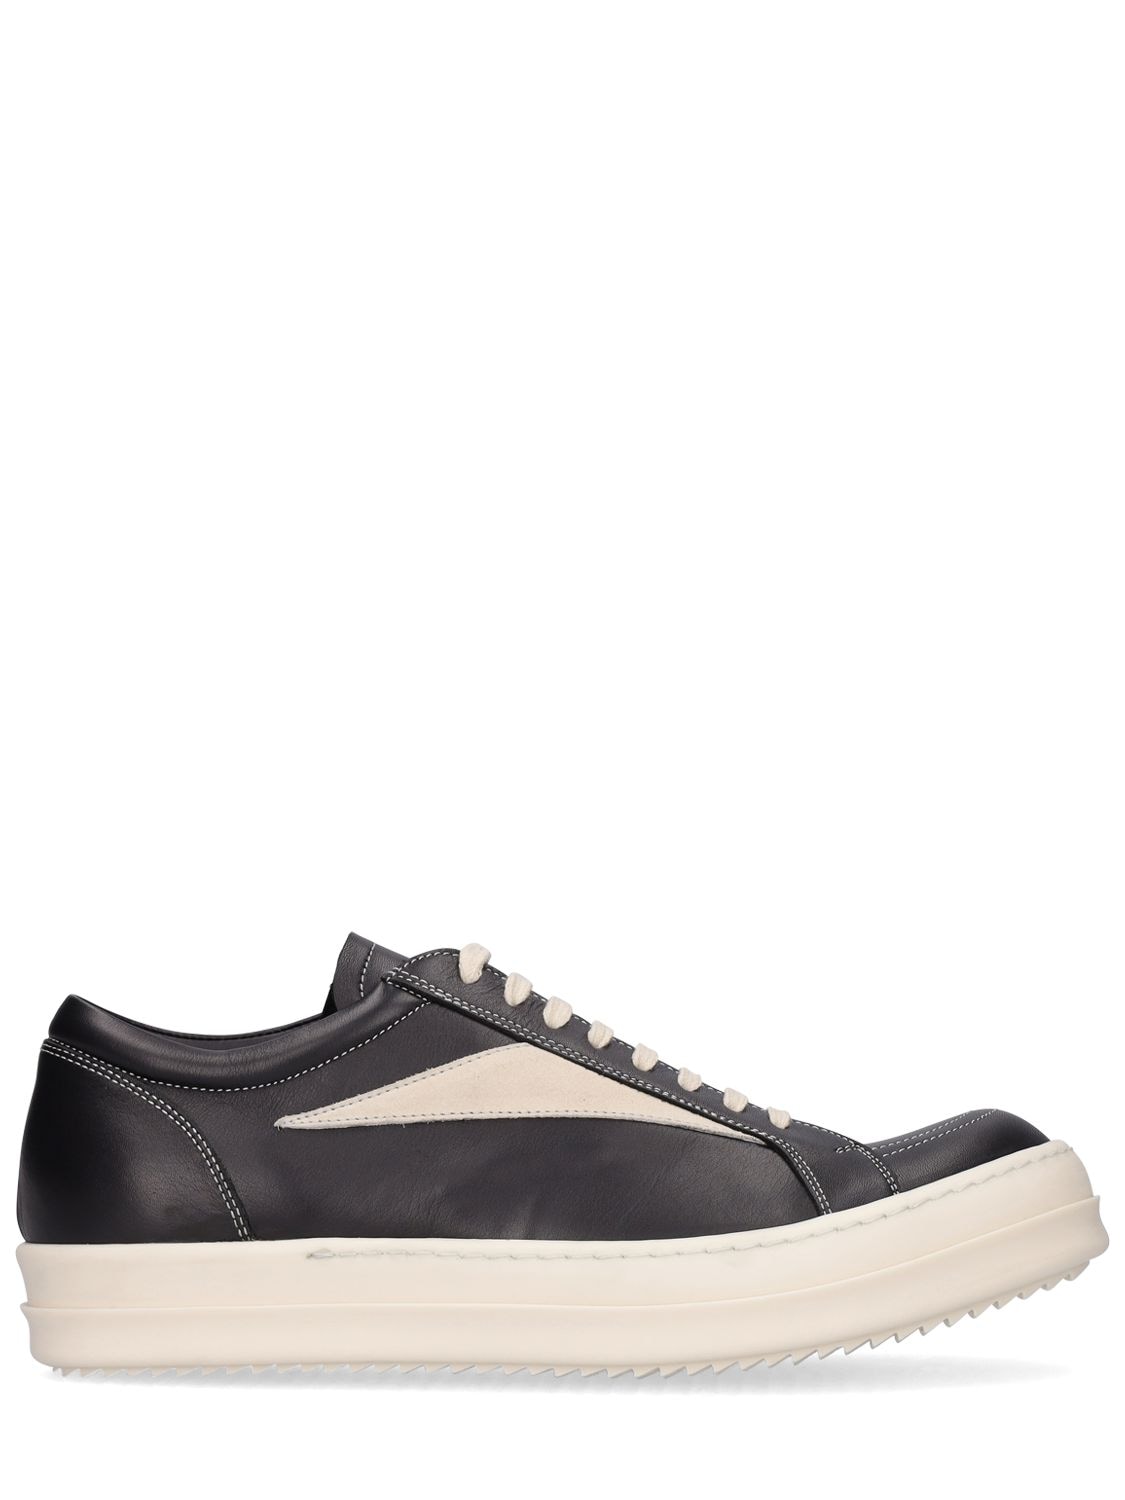 Rick Owens Vintage Leather Sneakers In Black